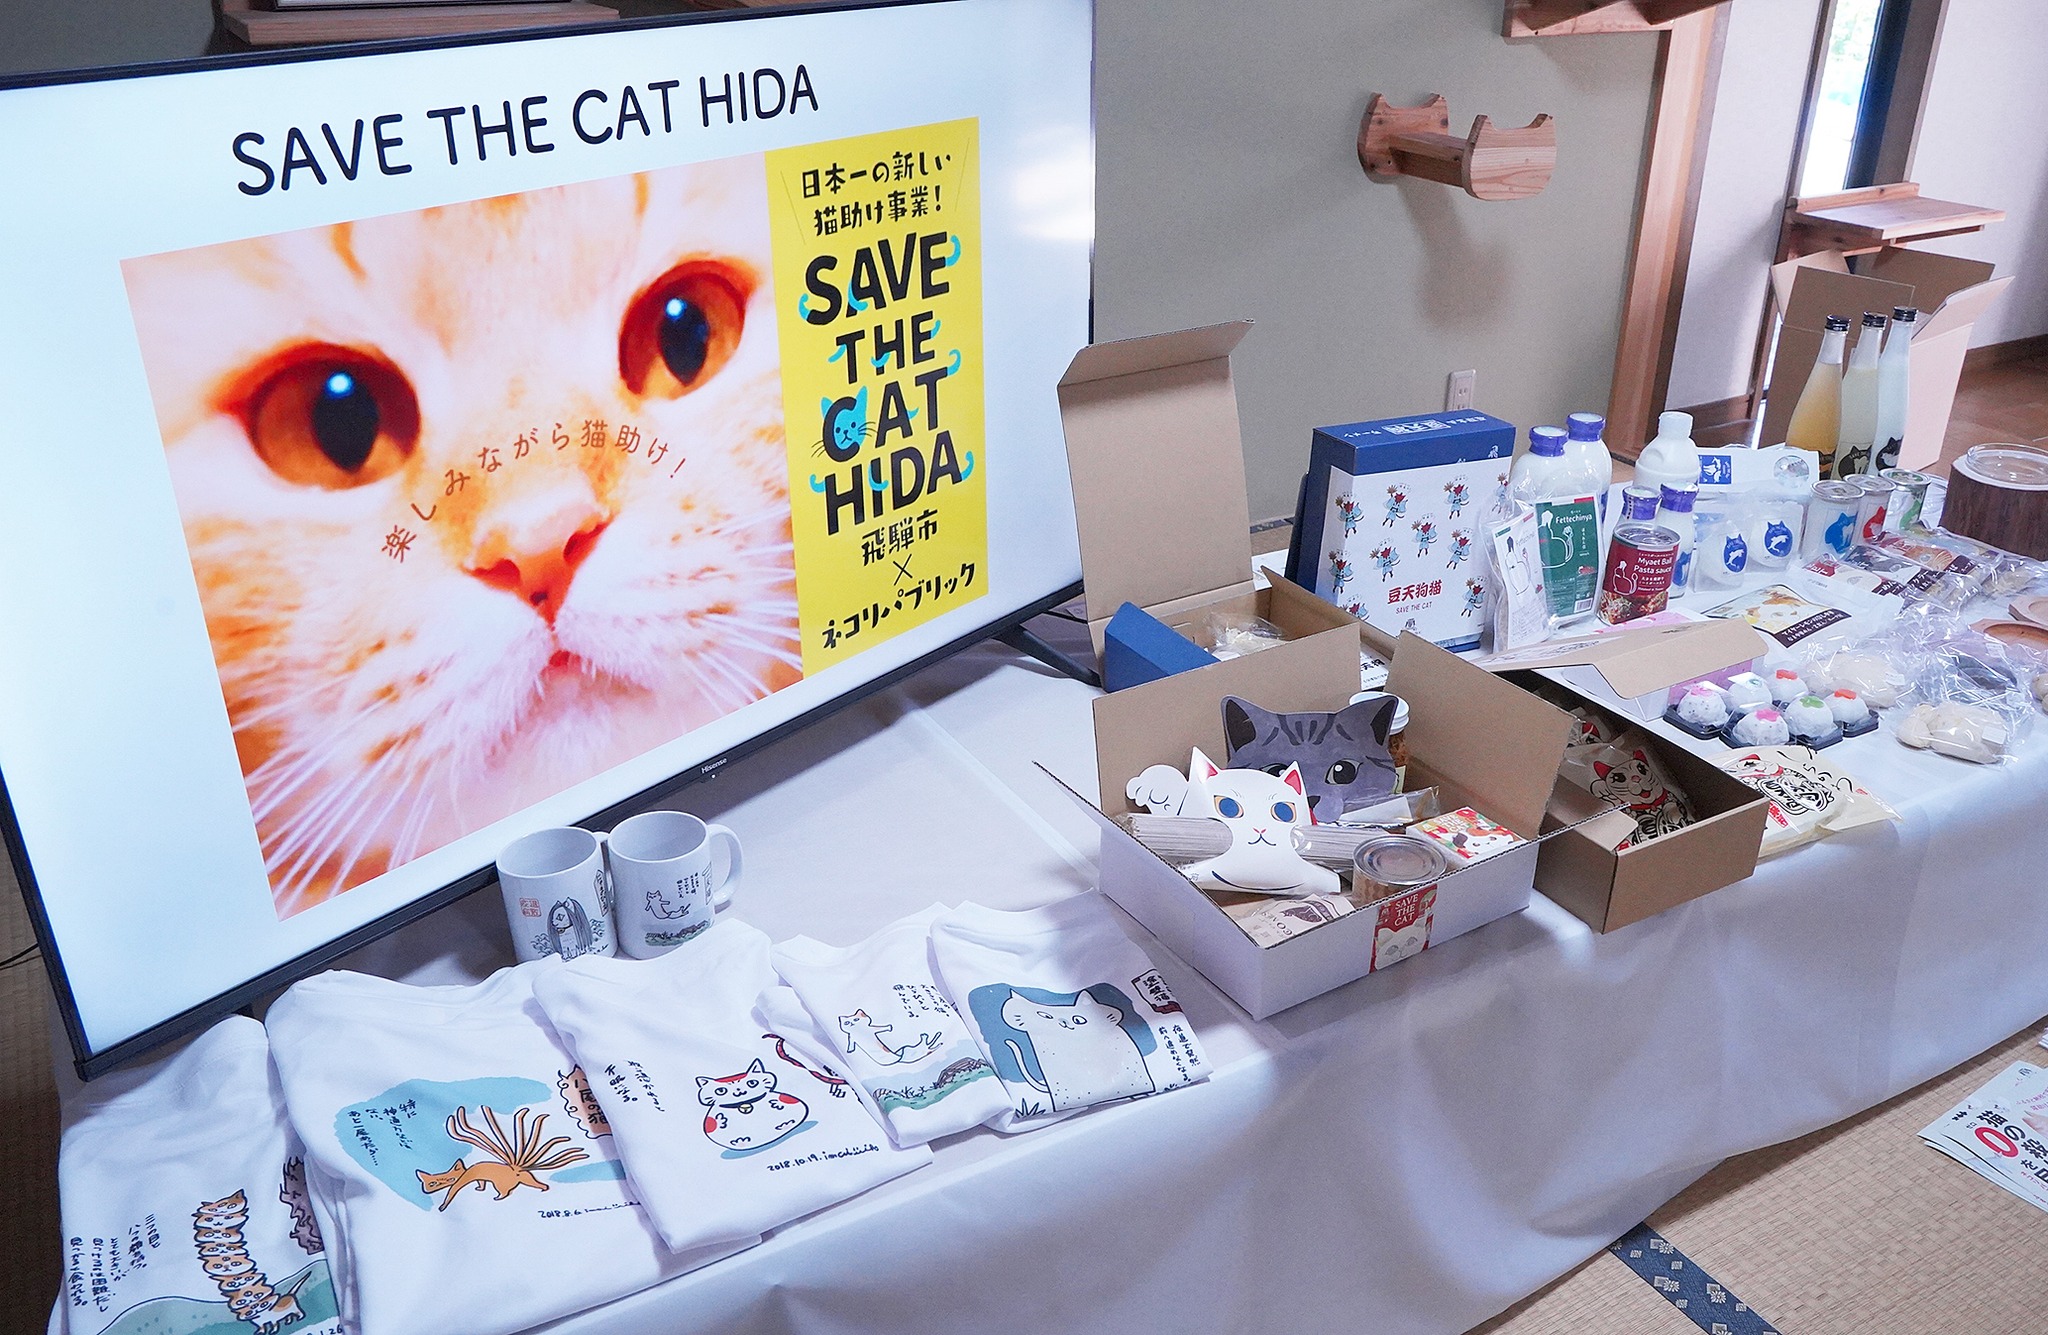 「猫助け」返礼品発表の様子写真